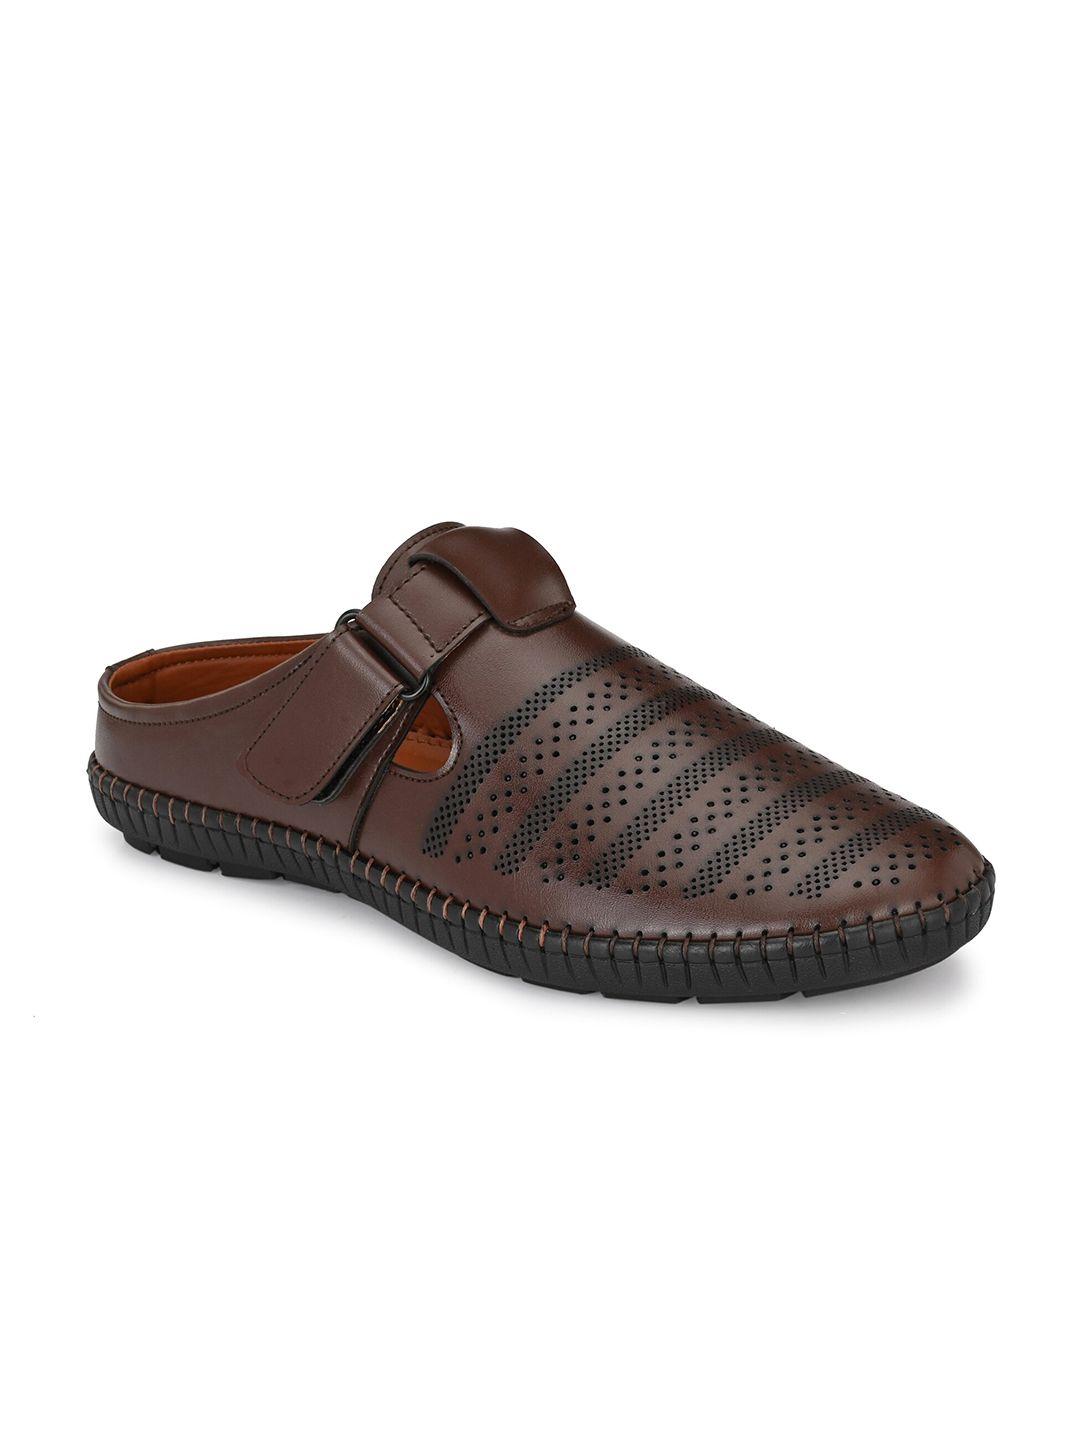 provogue-men-brown-shoe-style-sandals